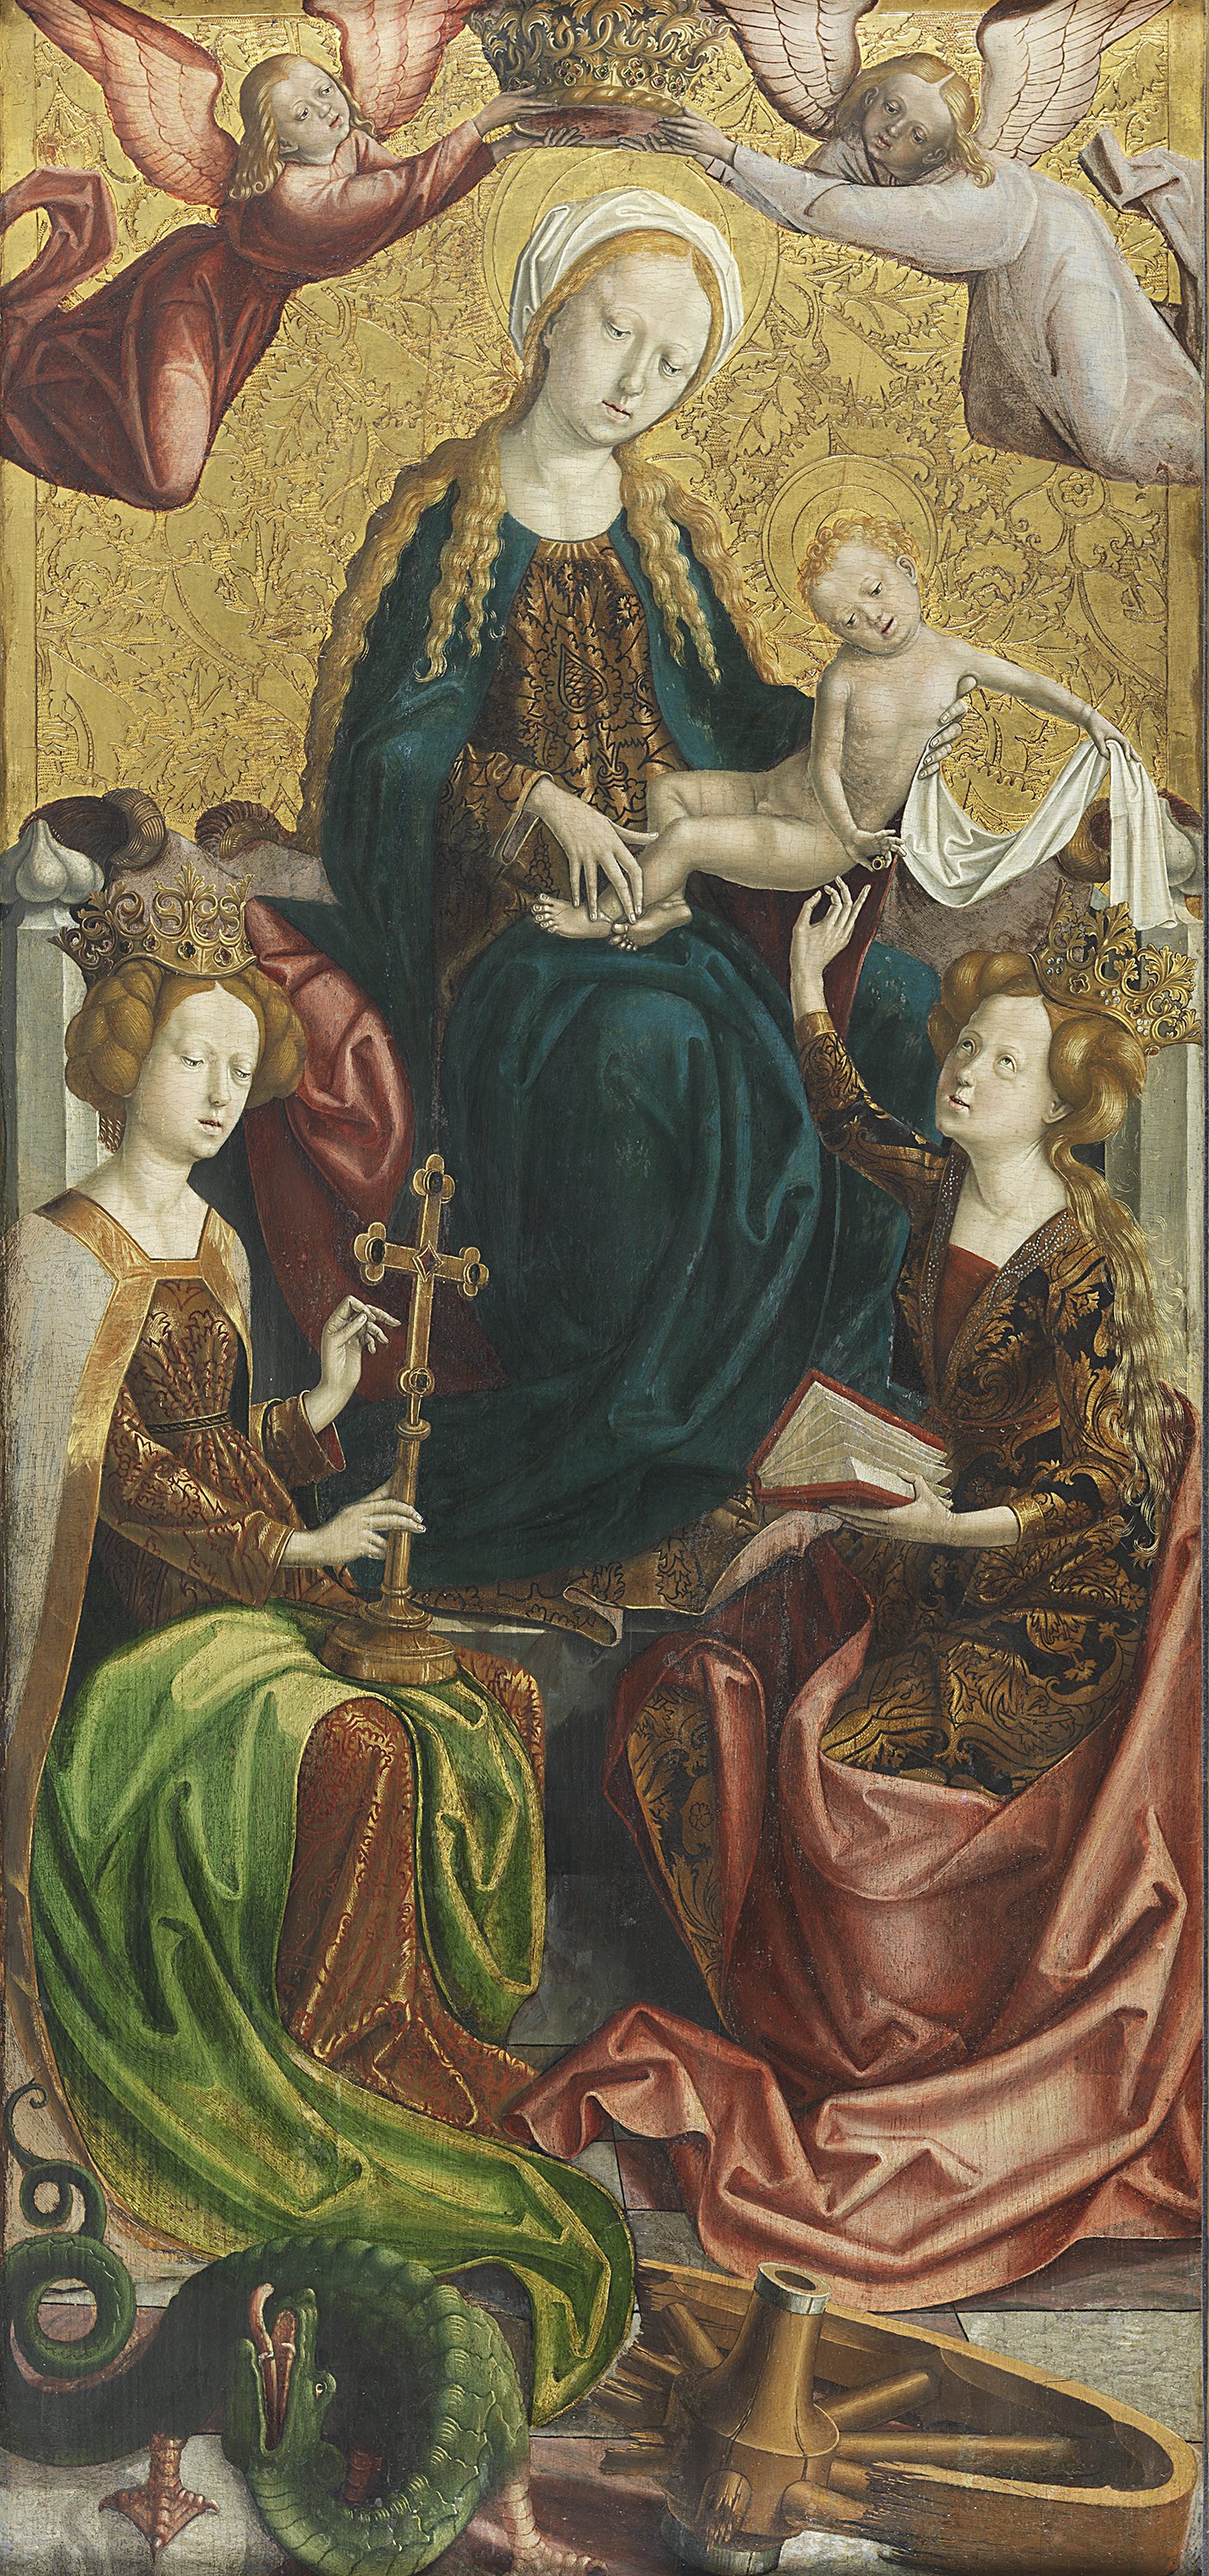 The Virgin and Child with Saint Margaret and Saint Catherine. La Virgen y el Niño con las santas Margarita y Catalina, c. 1500